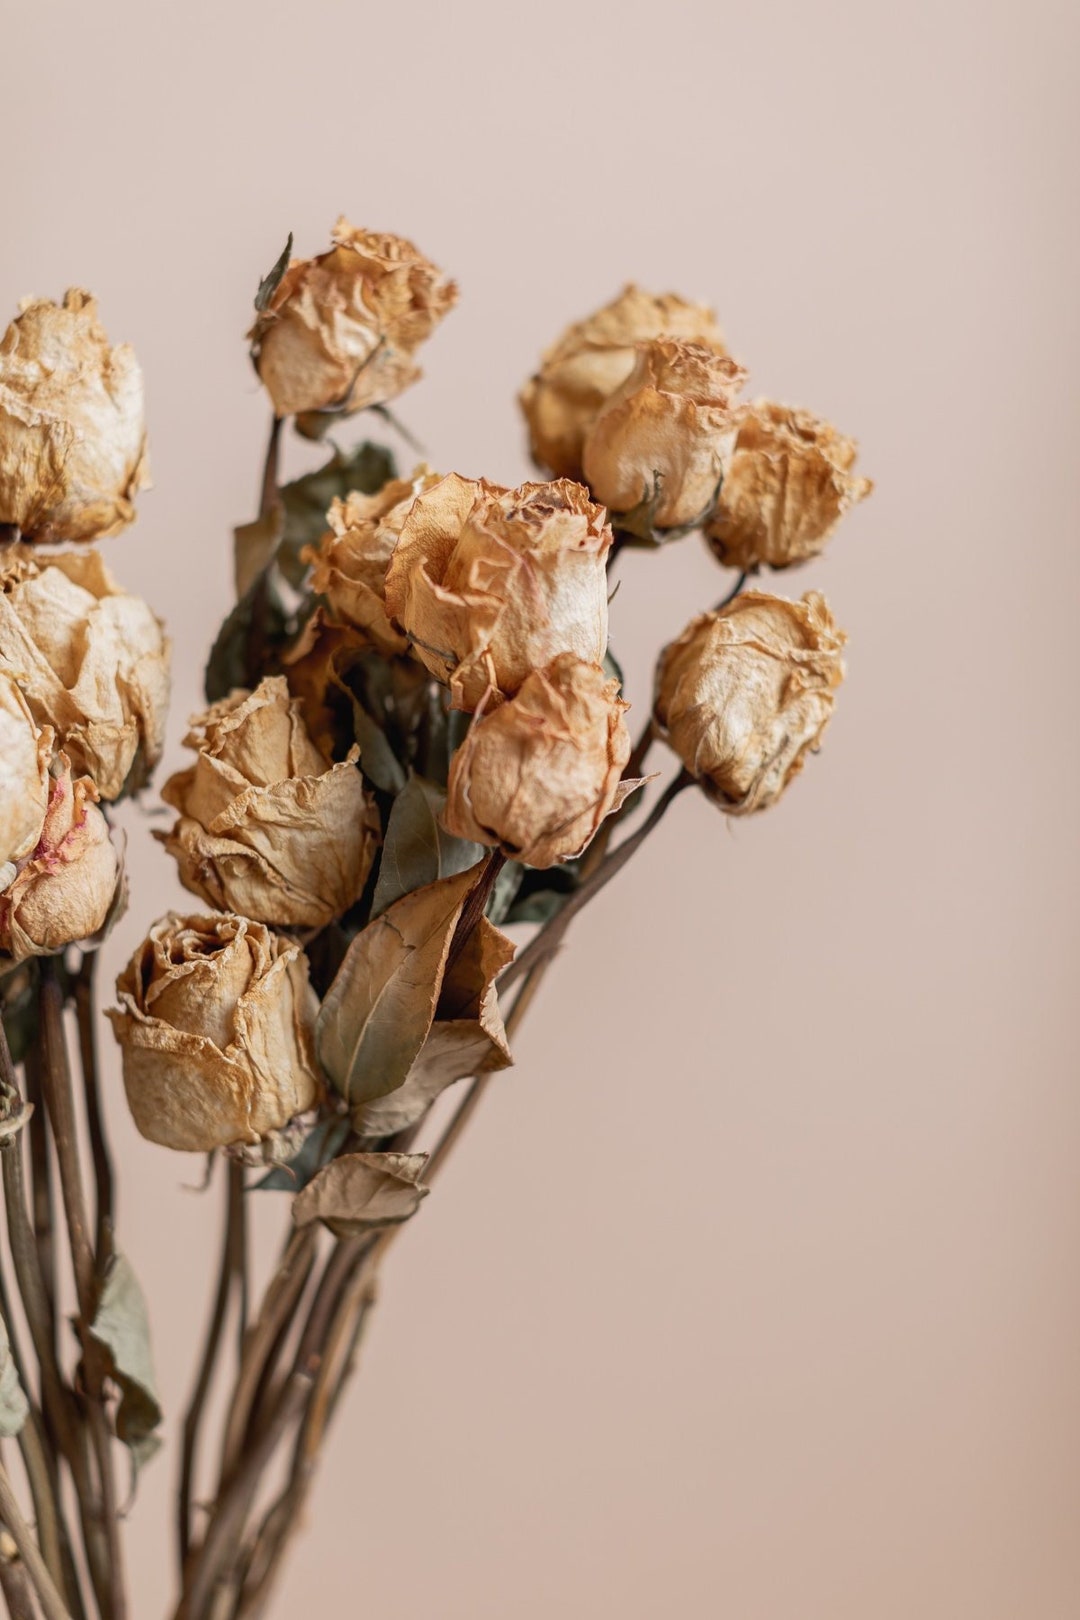 Lemon Dried Slices Rose Bud Granules Dried Flowers DIY